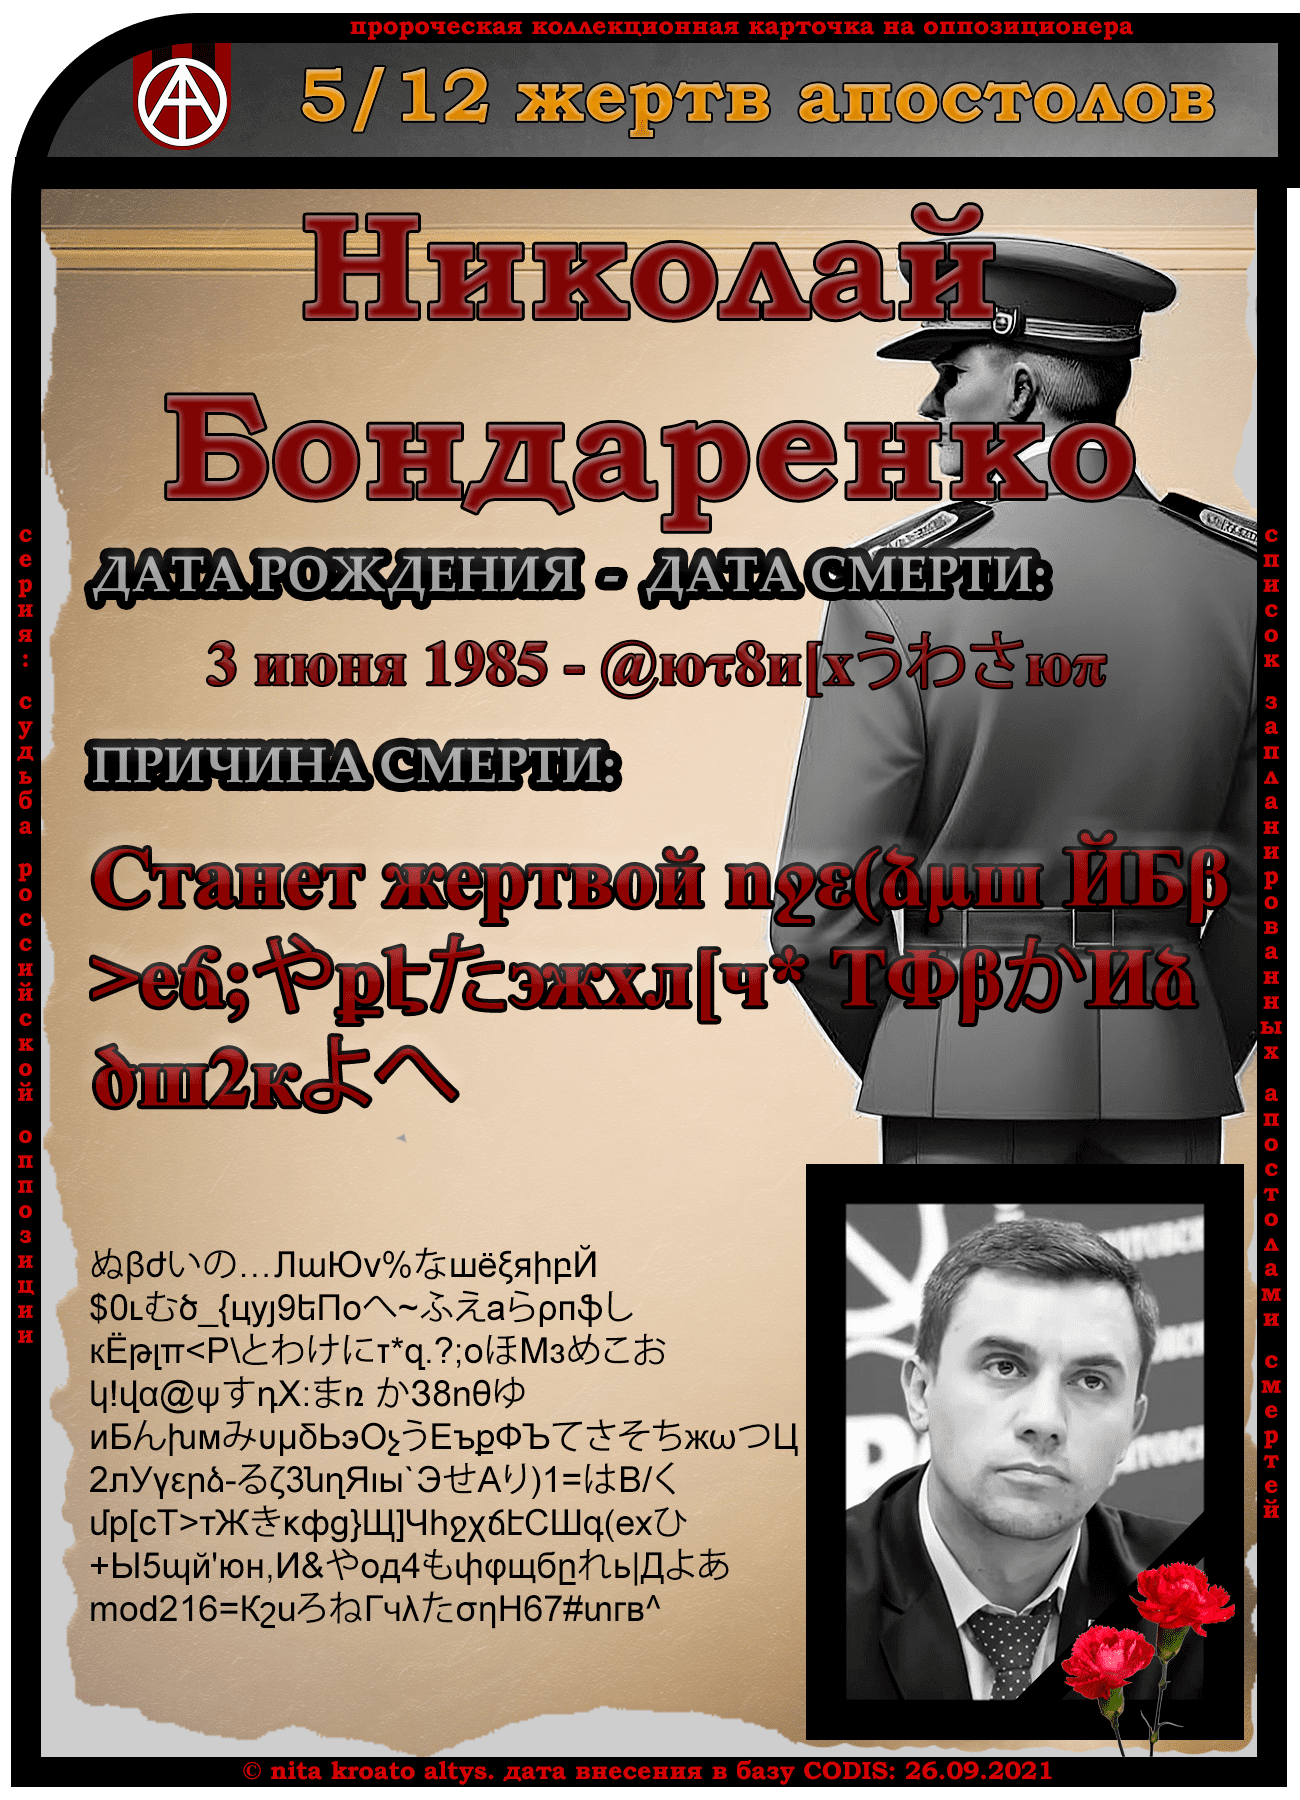 5. Николай Бондаренко 3 июня 1985